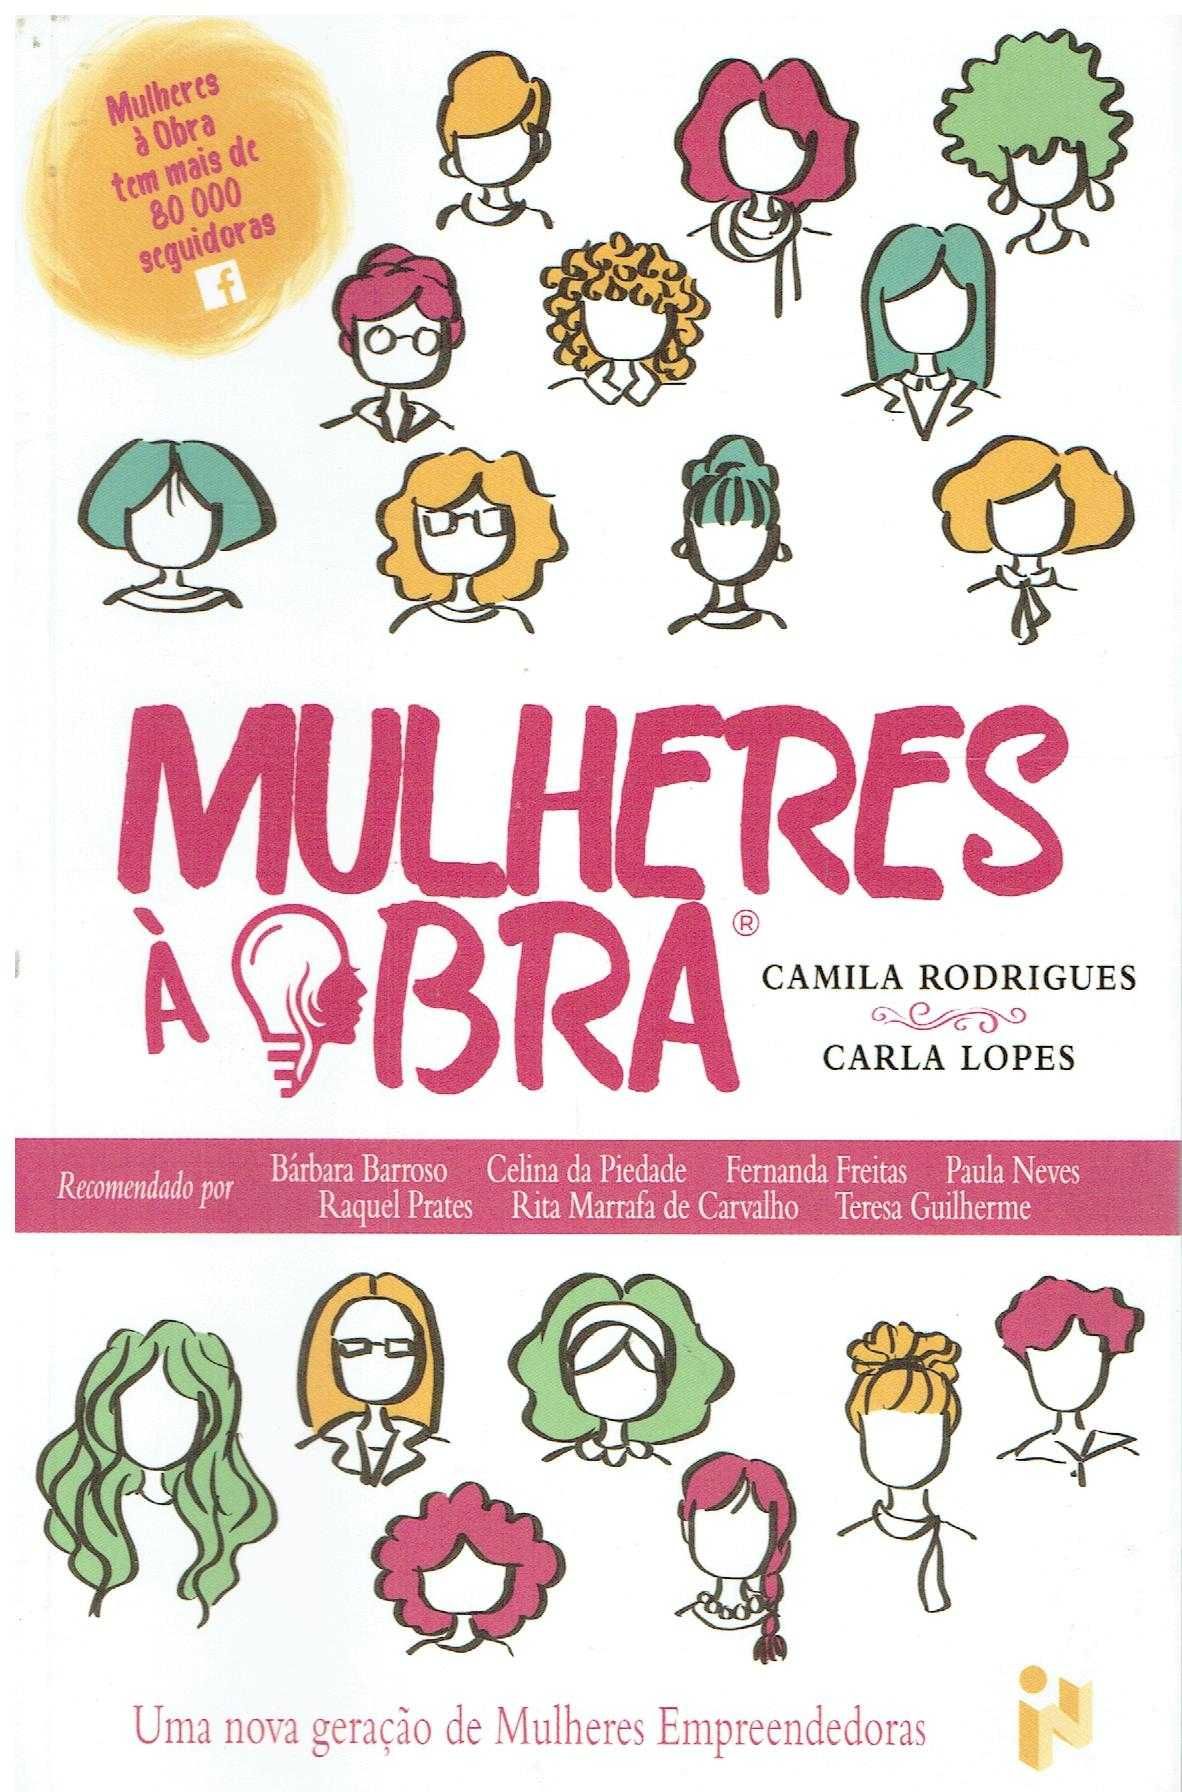 12807

Mulheres à Obra
de Camila Rodrigues e Carla Lopes